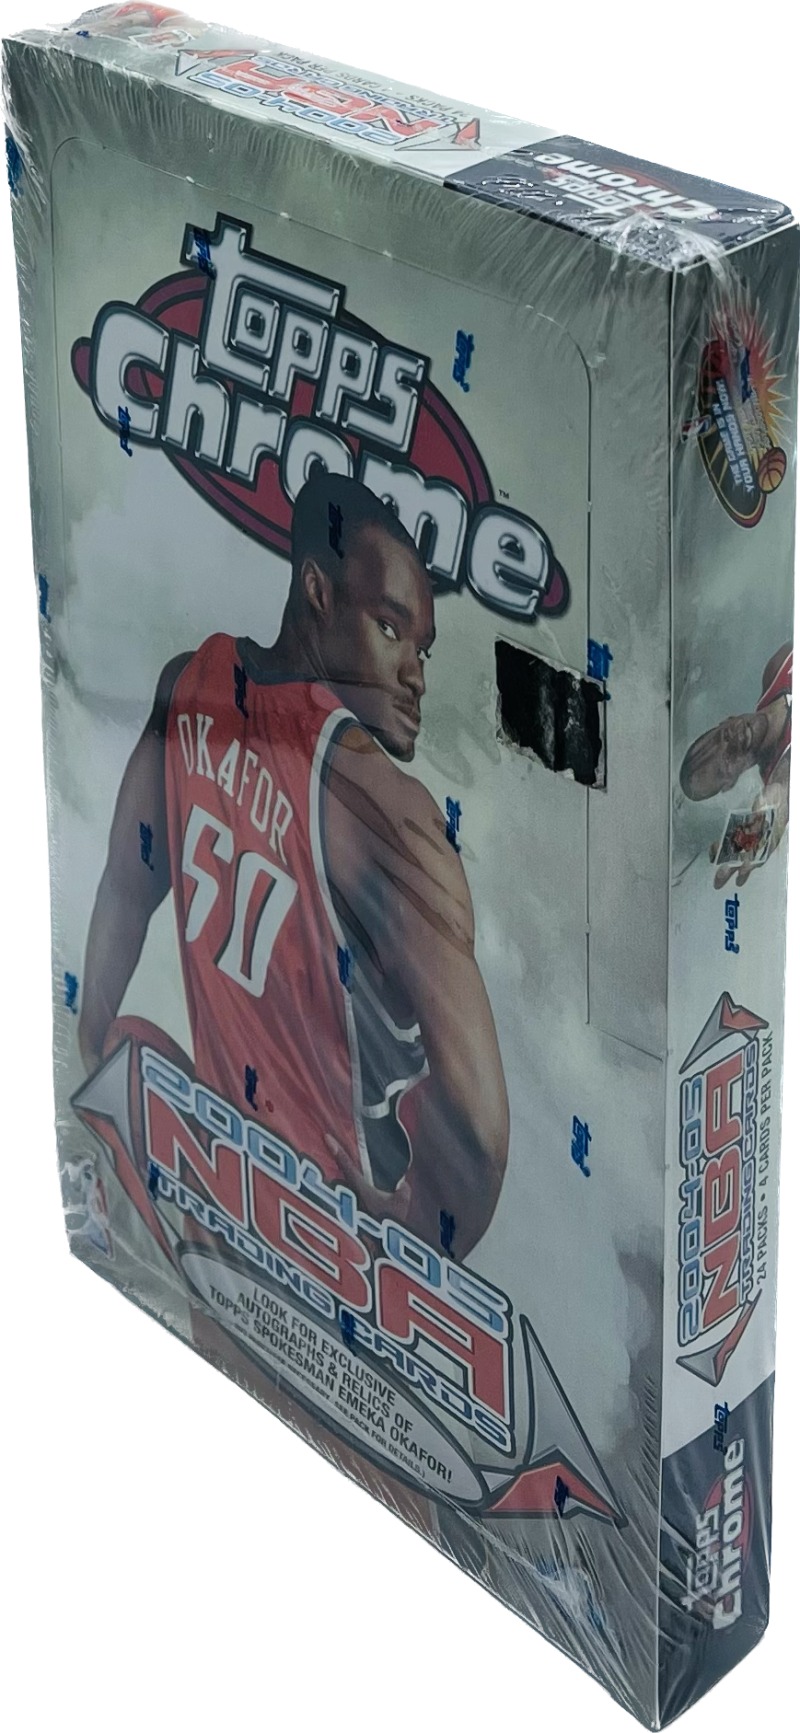 2004-05 Topps Chrome Basketball Hobby Box Image 2